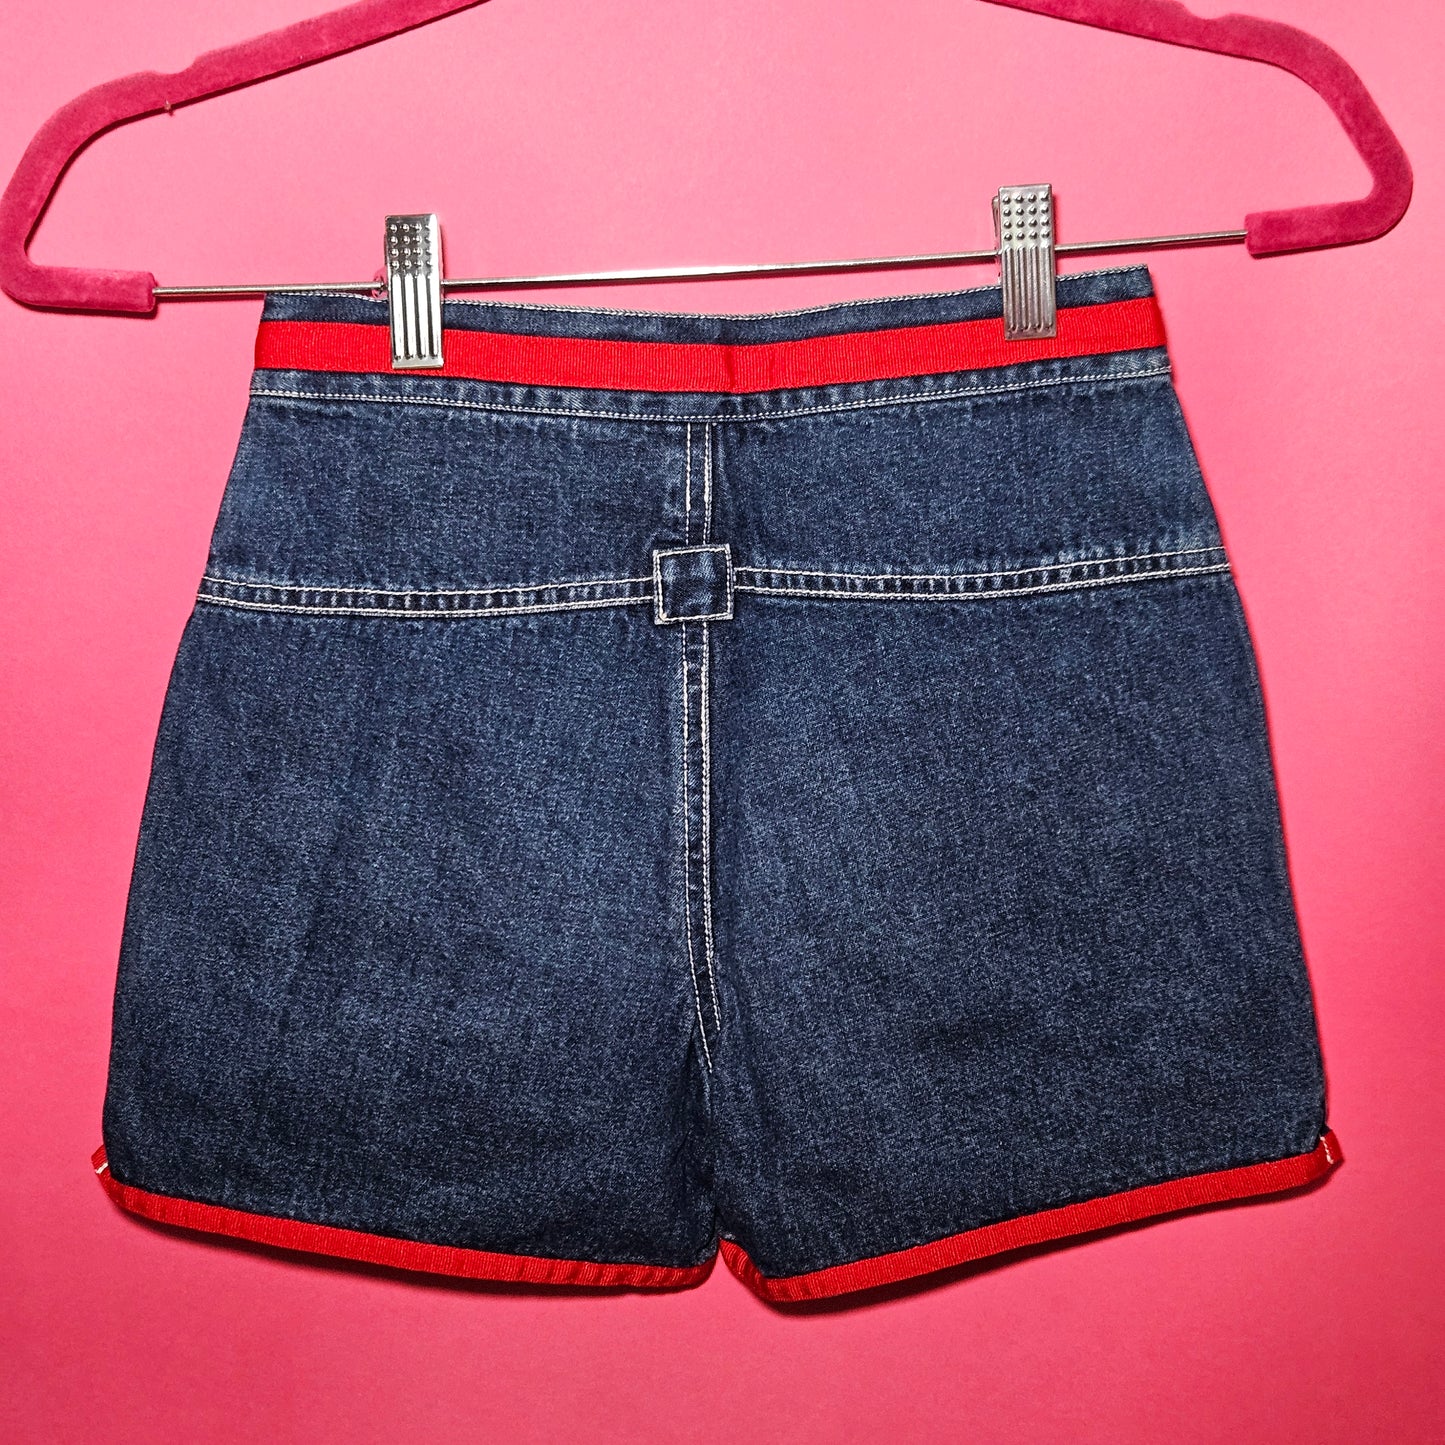 2001 Powerpuff Girls denim shorts